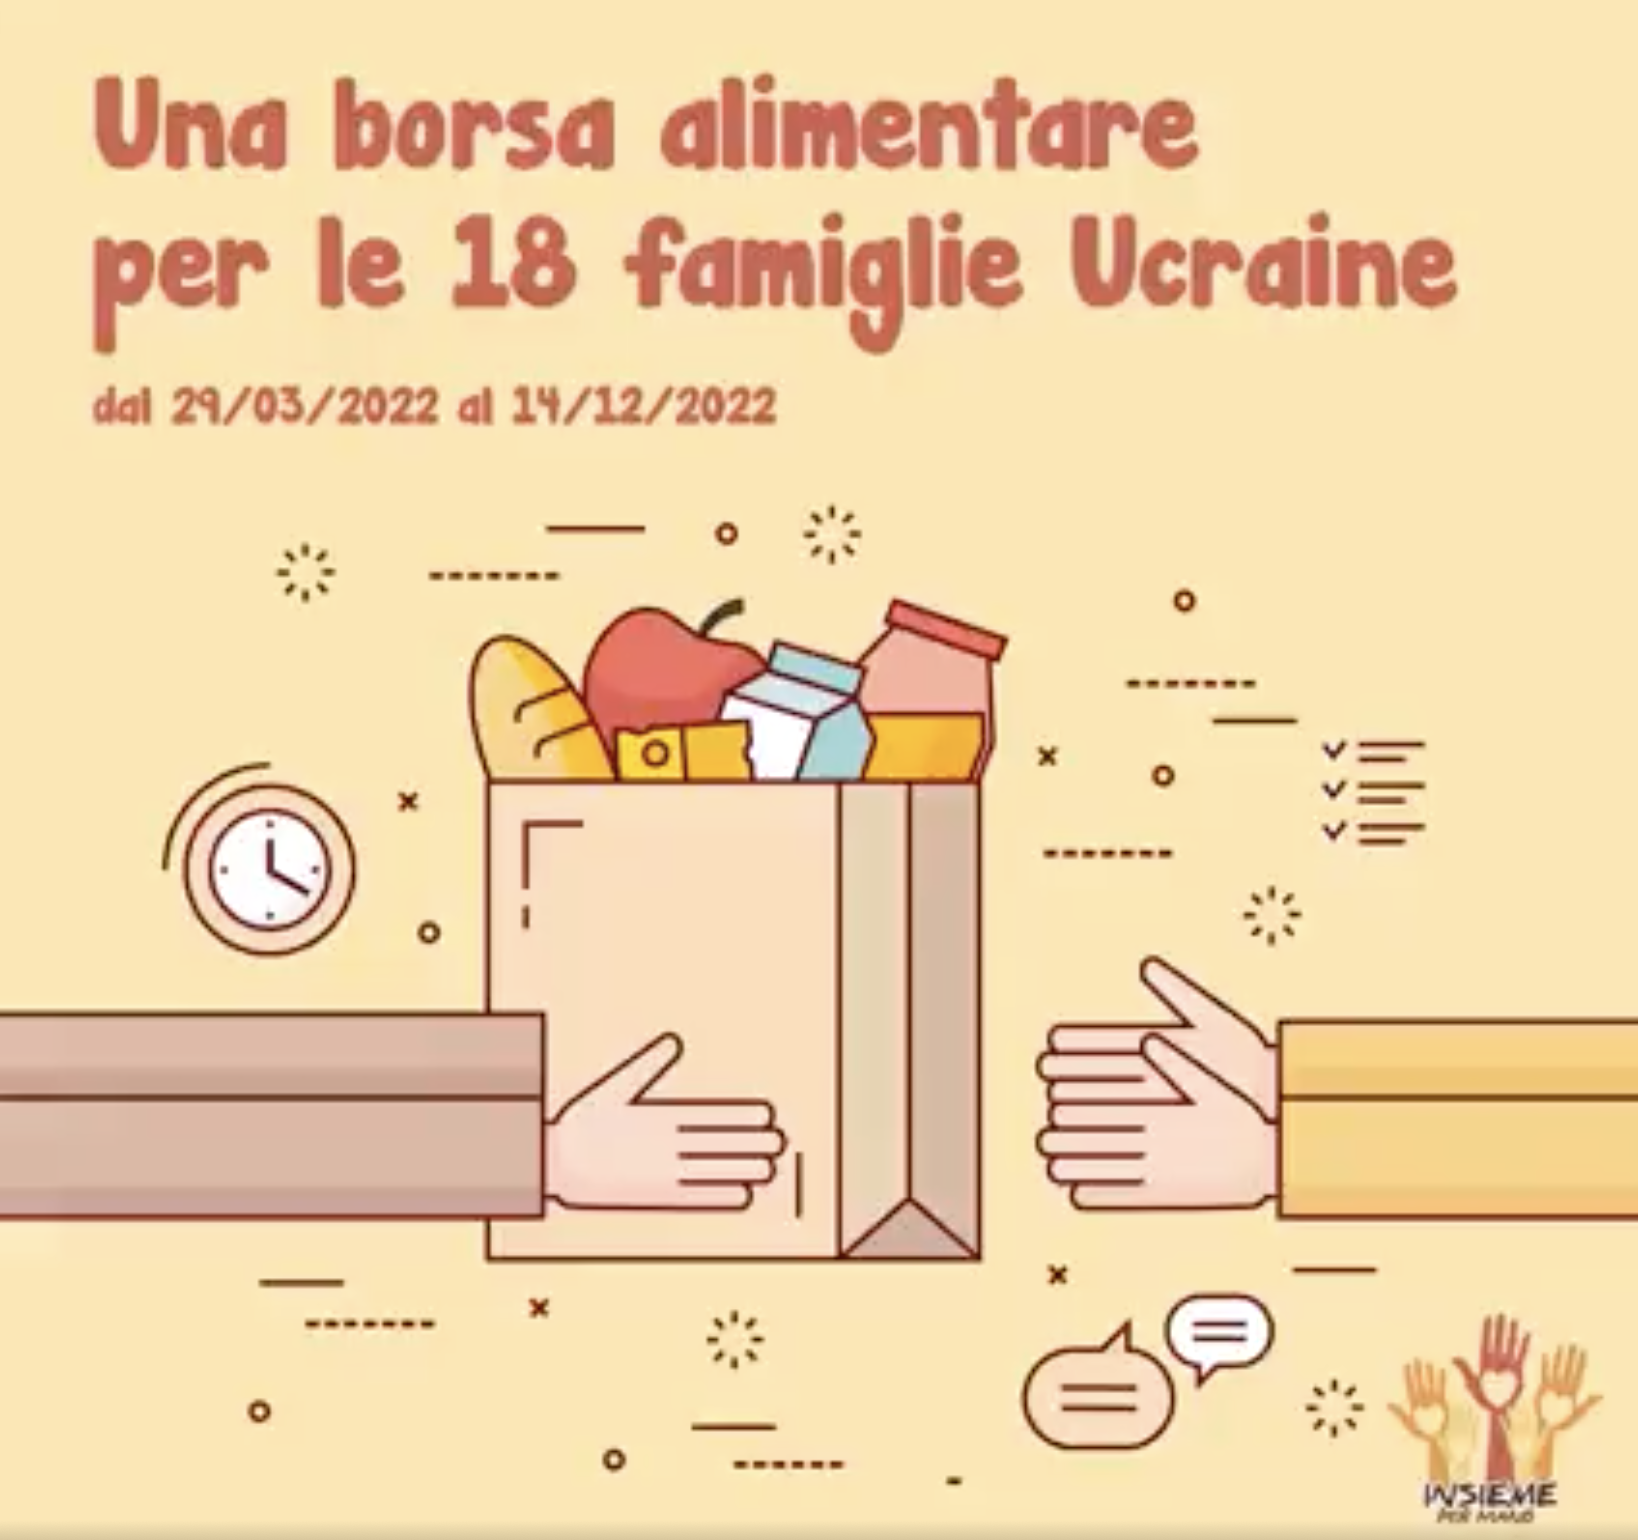 Una borsa alimentare per le 18 famiglie ucraine